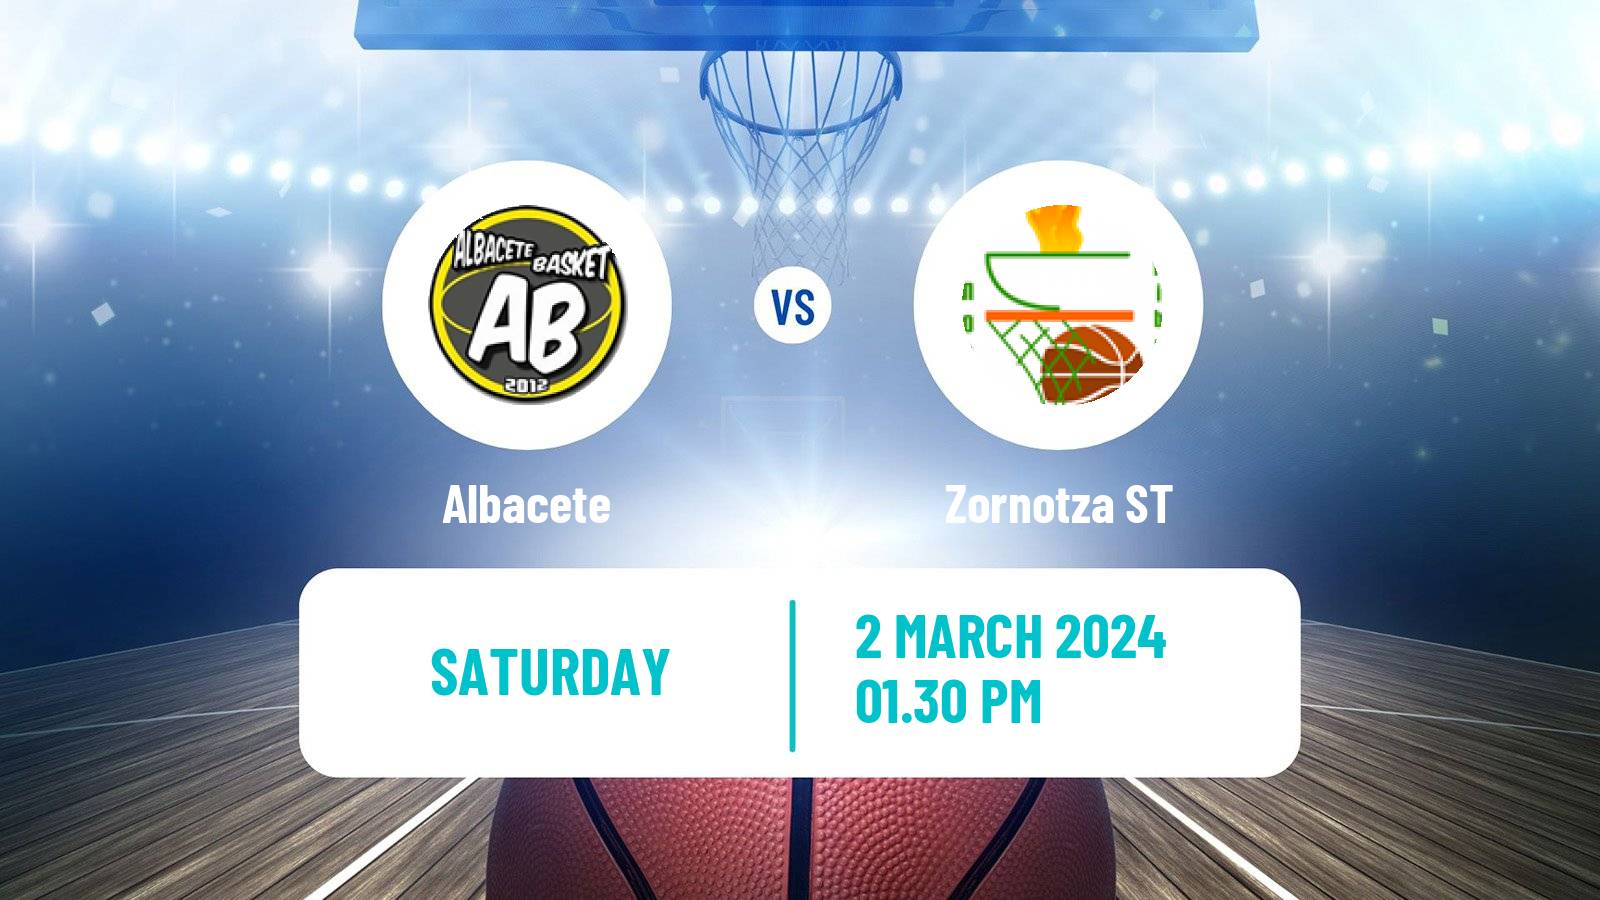 Basketball Spanish LEB Plata Albacete - Zornotza ST